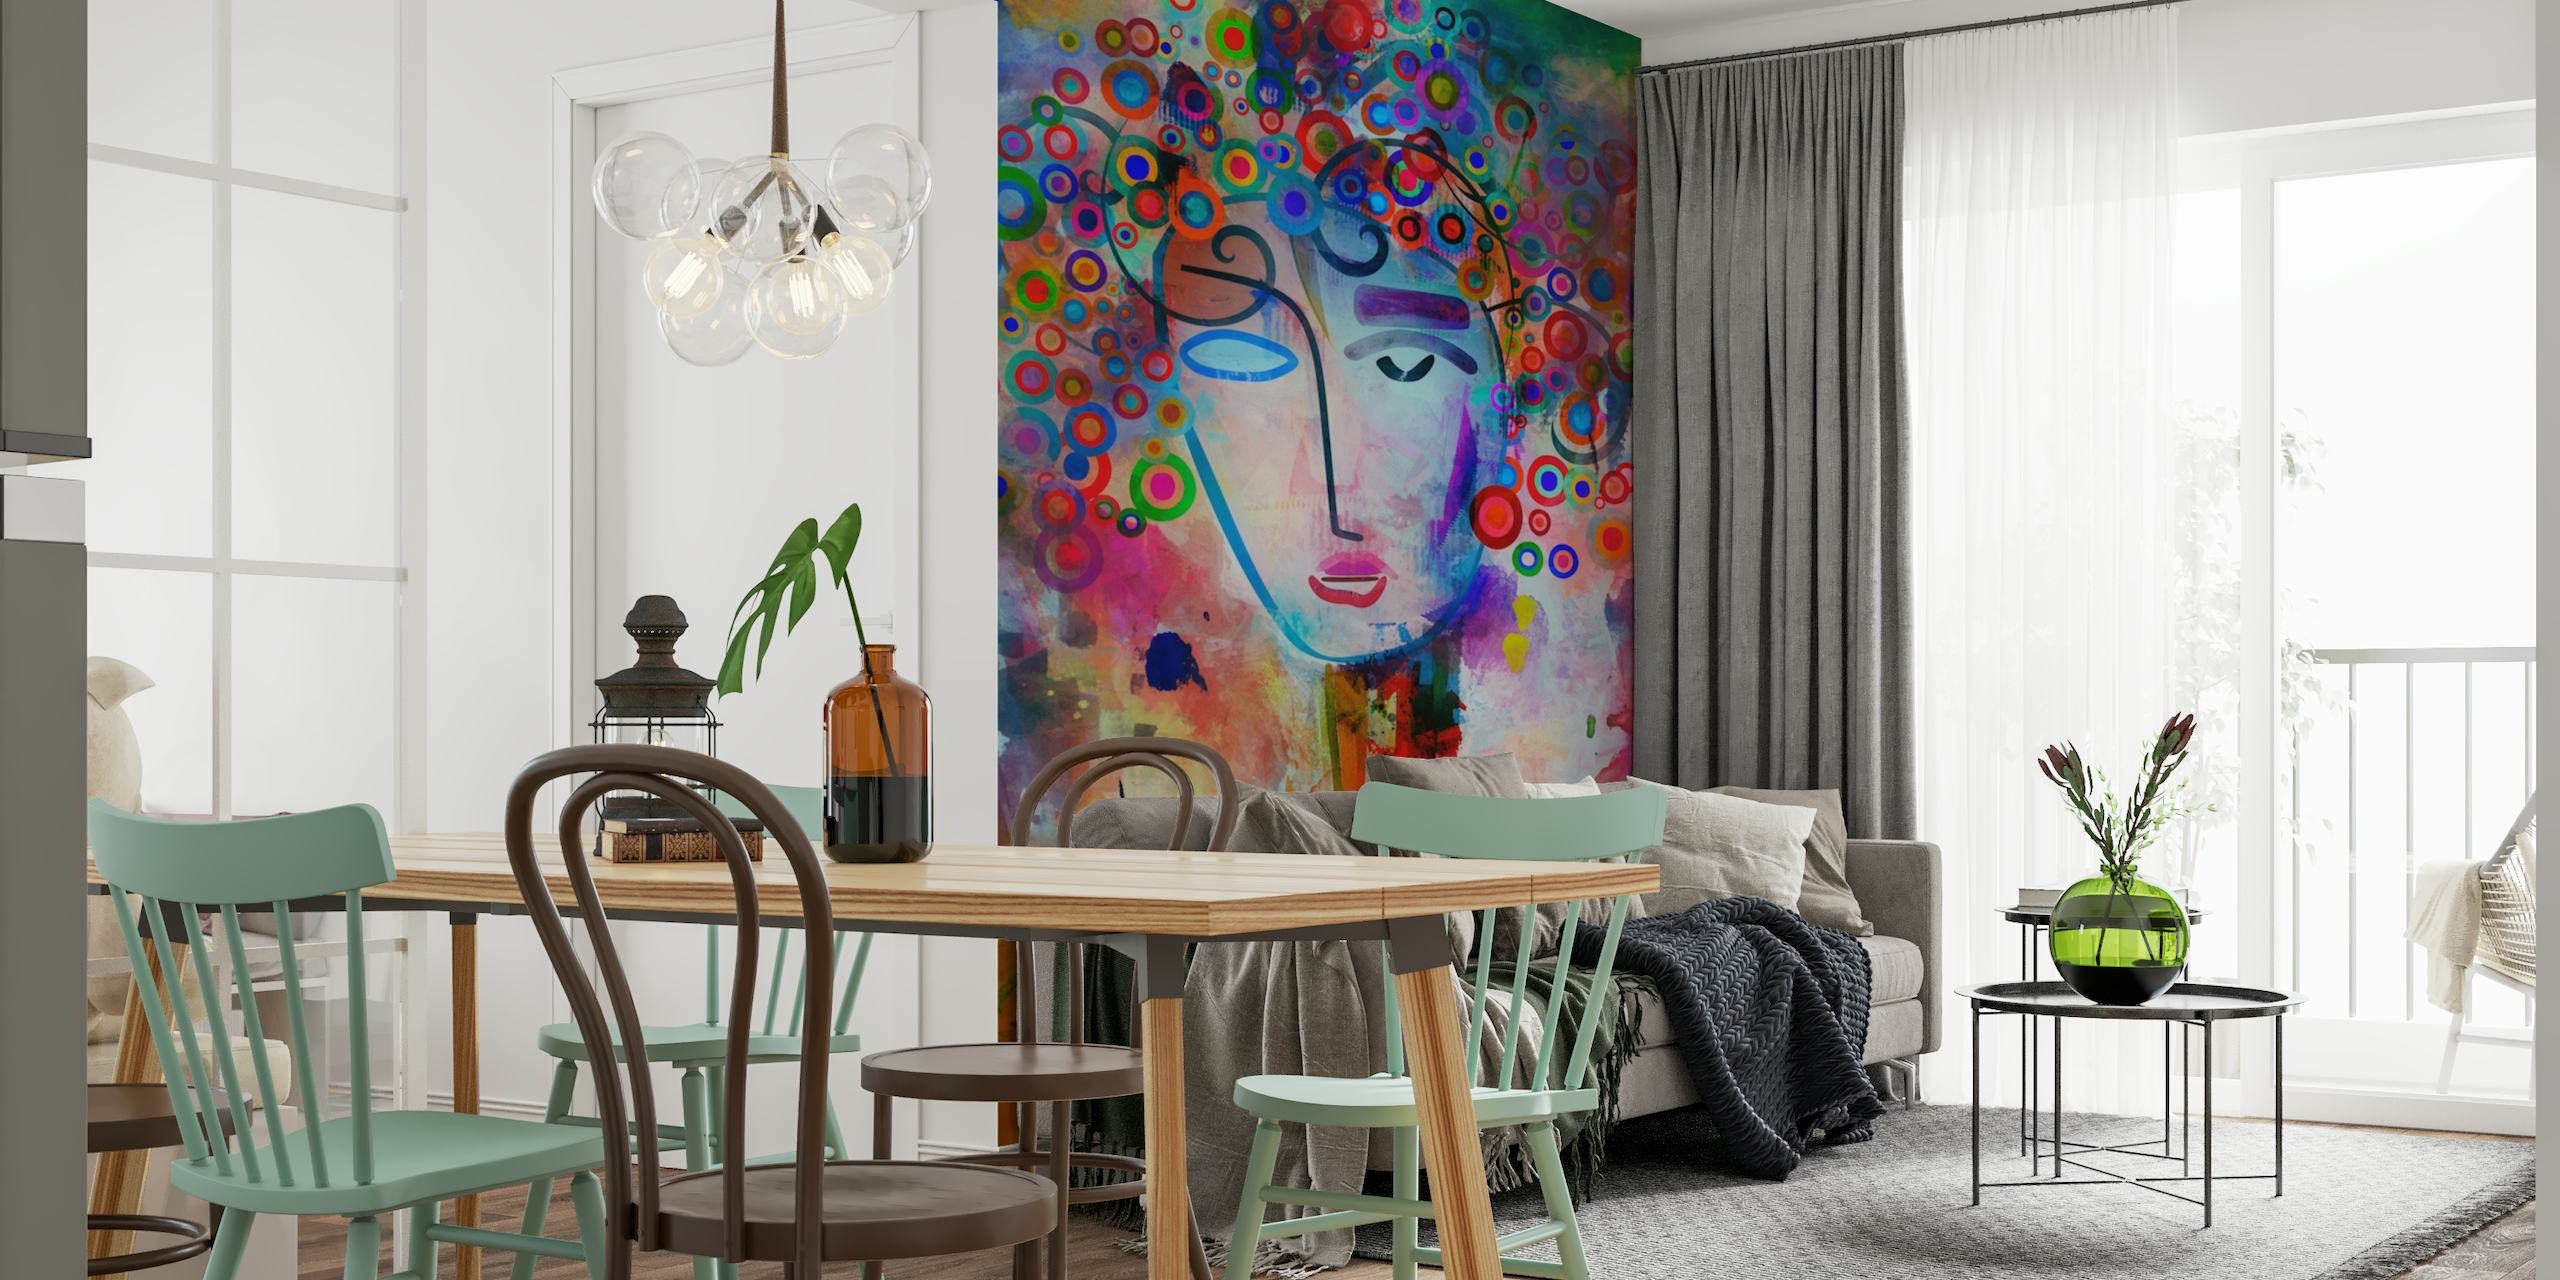 Abstract kleurrijk fotobehang met een fantasierijke weergave van een geest tijdens een brainstormsessie